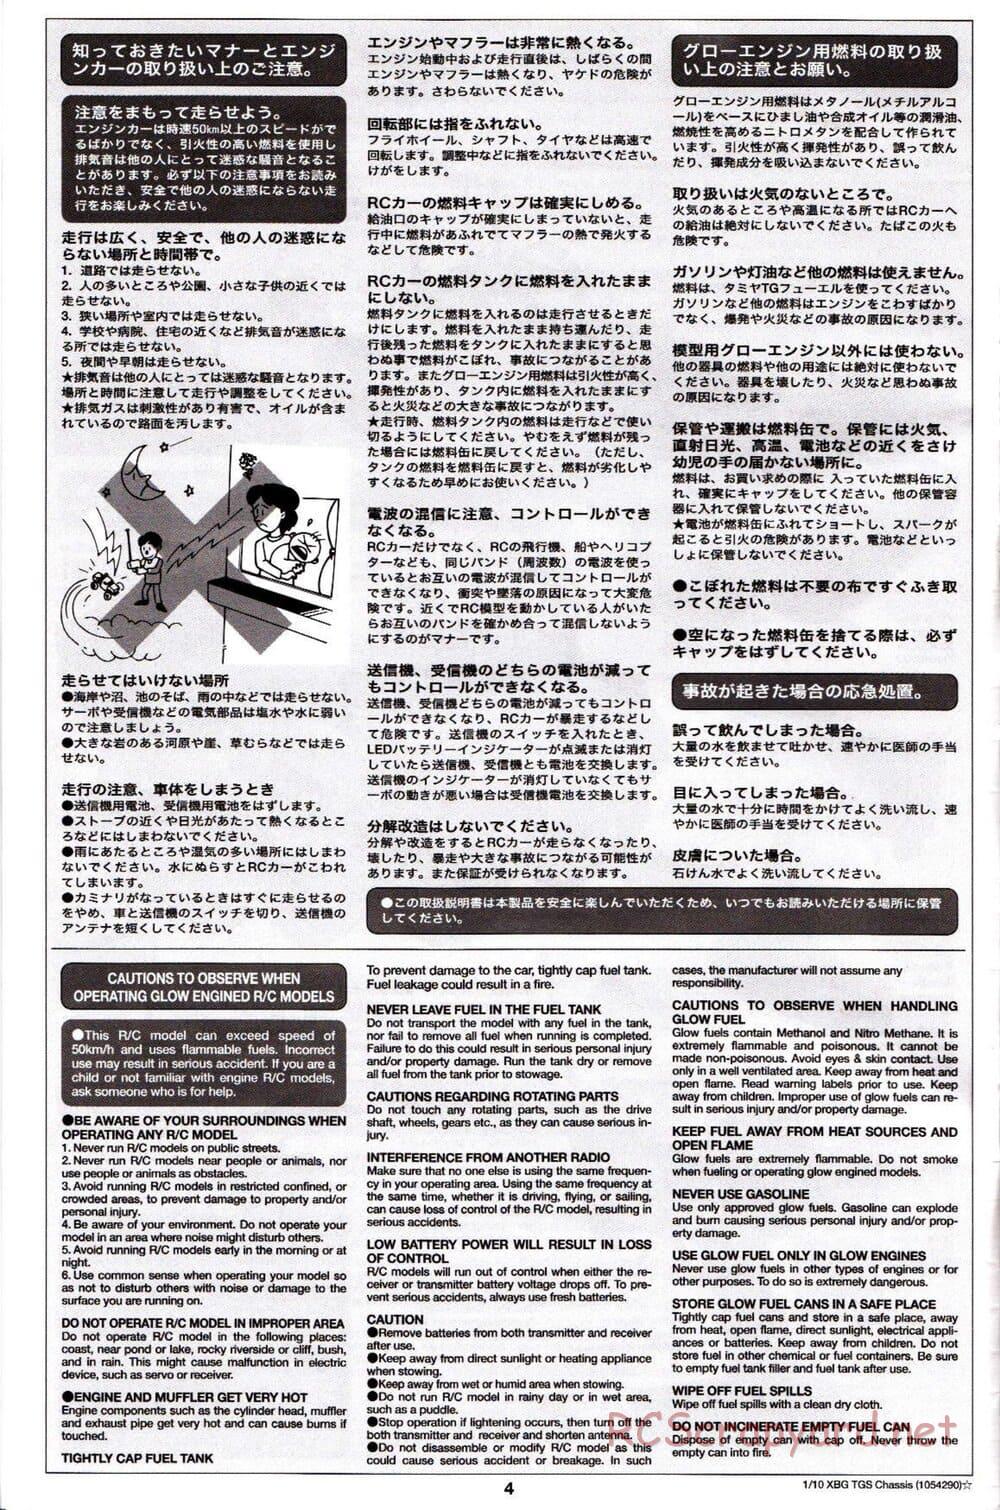 Tamiya - TGS Chassis - Manual - Page 4